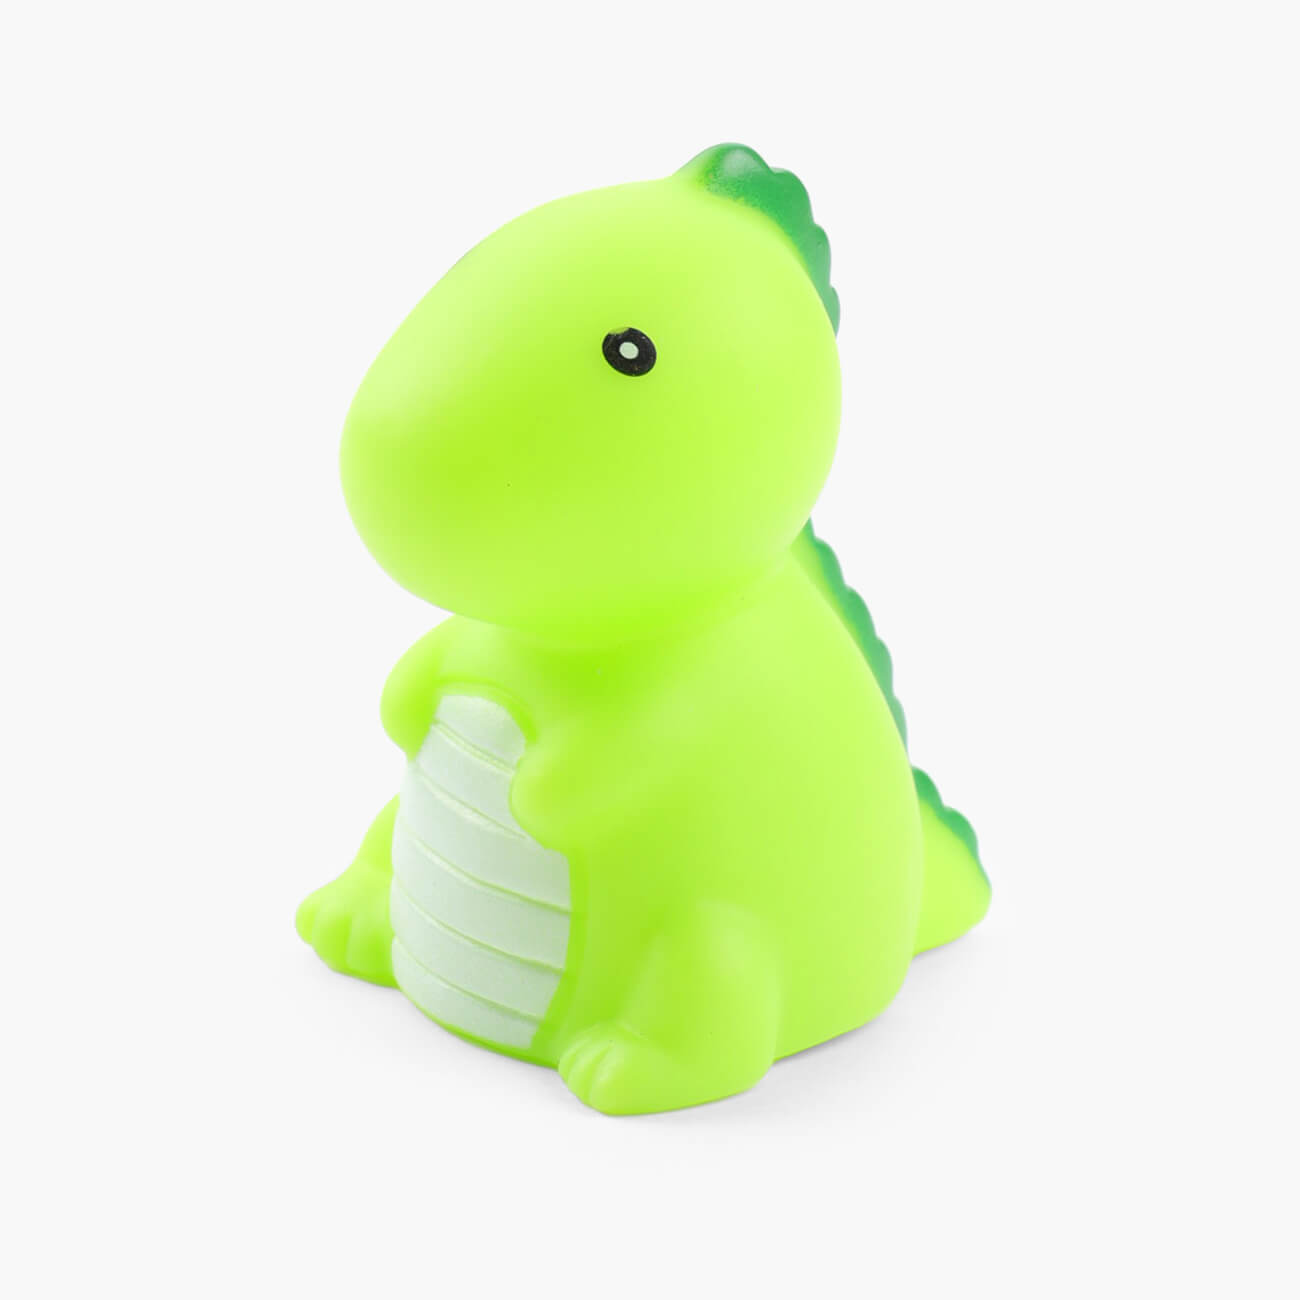 Игрушка для купания, 7х5х5 см, с подсветкой, пластик, голубая, Динозавр, Dino